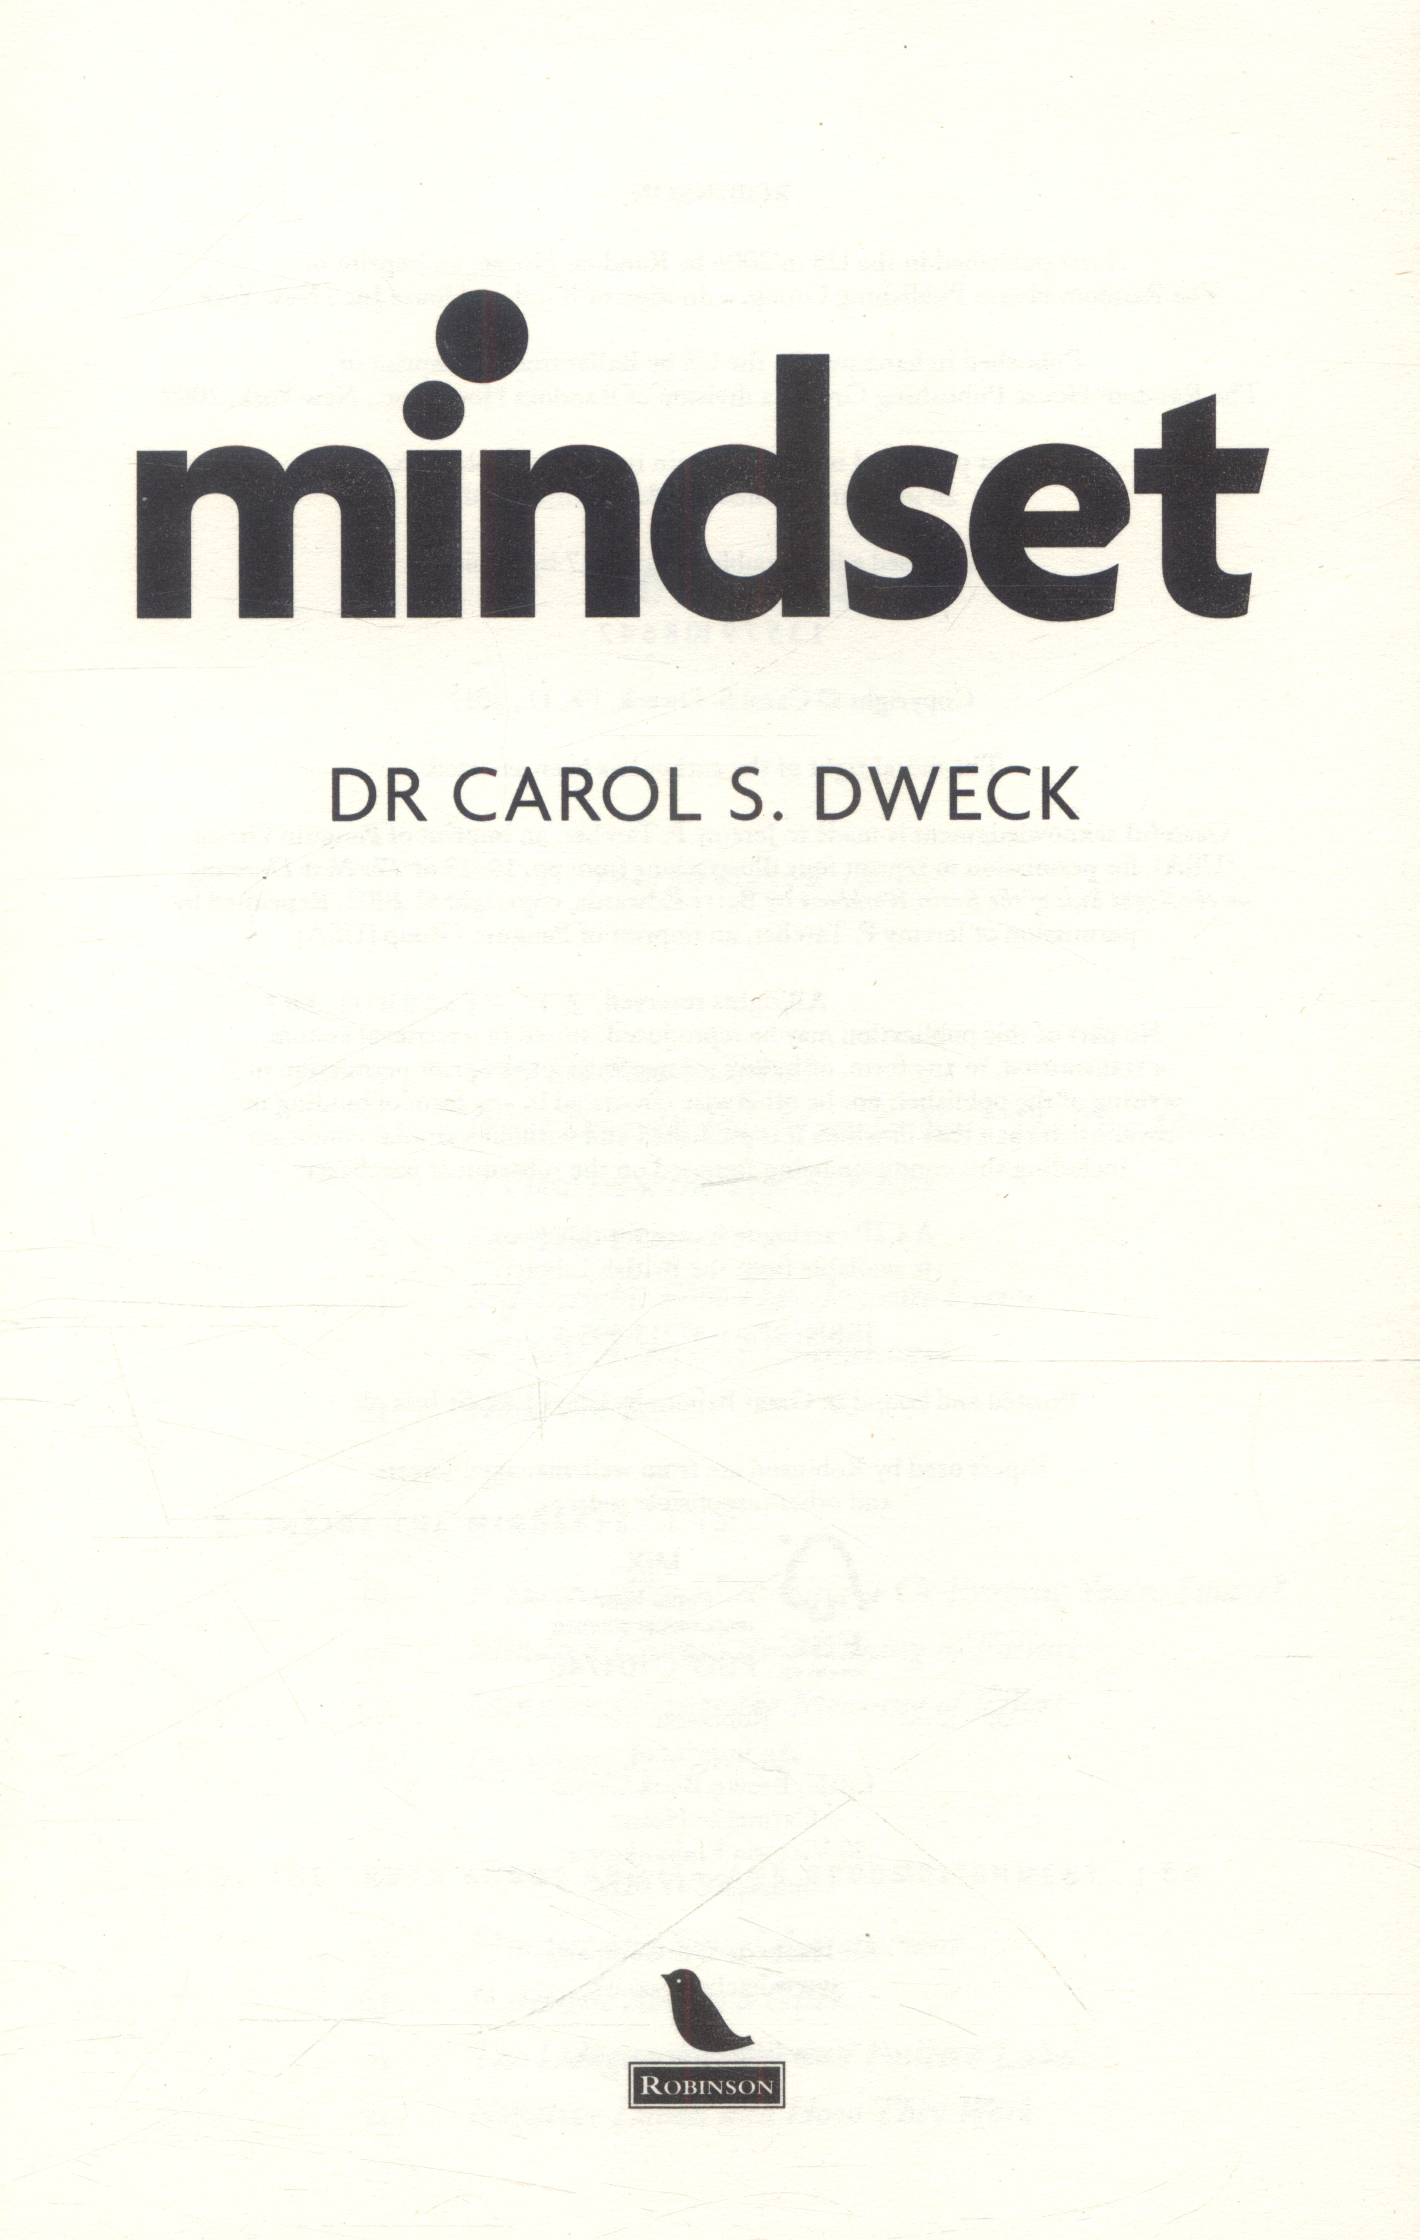 mindset by carol dweck pdf download